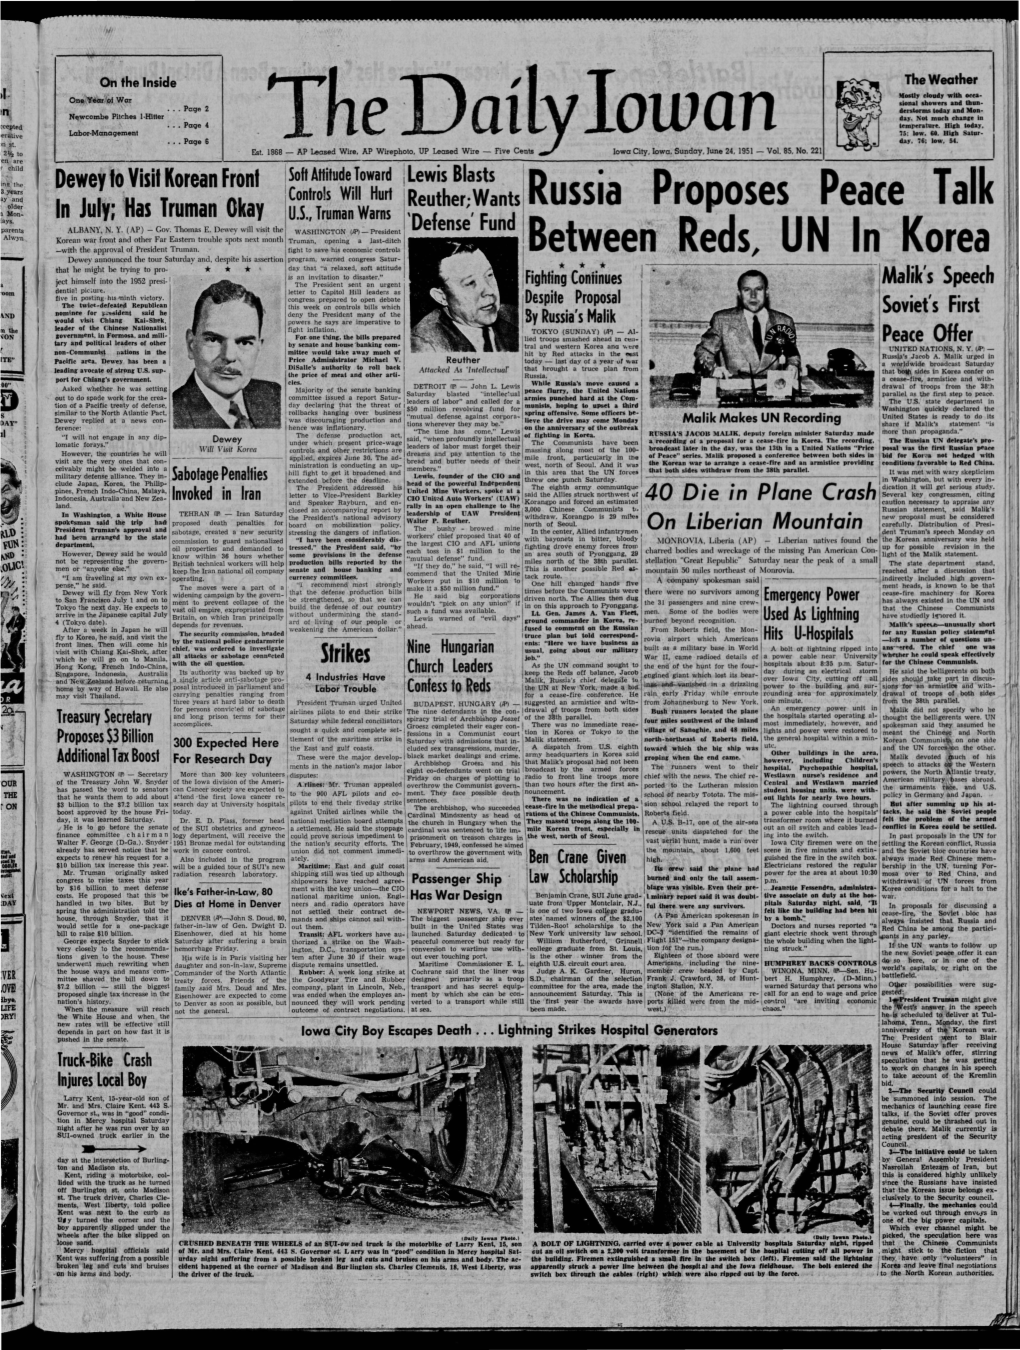 Daily Iowan (Iowa City, Iowa), 1951-06-24